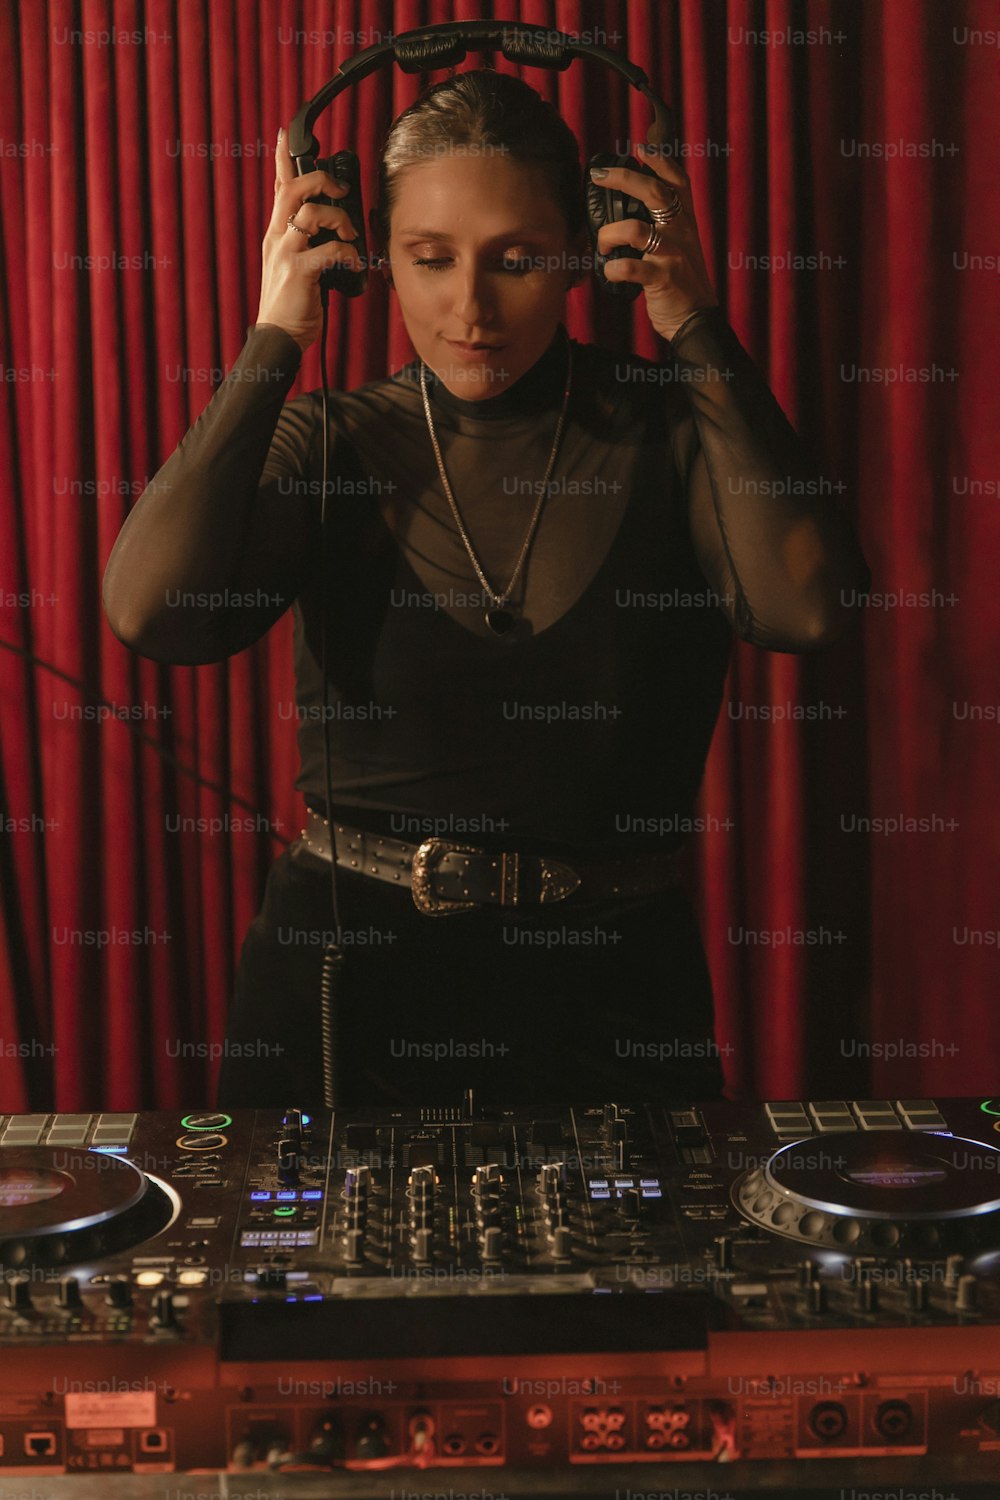 Eine Frau in einem schwarzen Top spielt ein DJ-Set